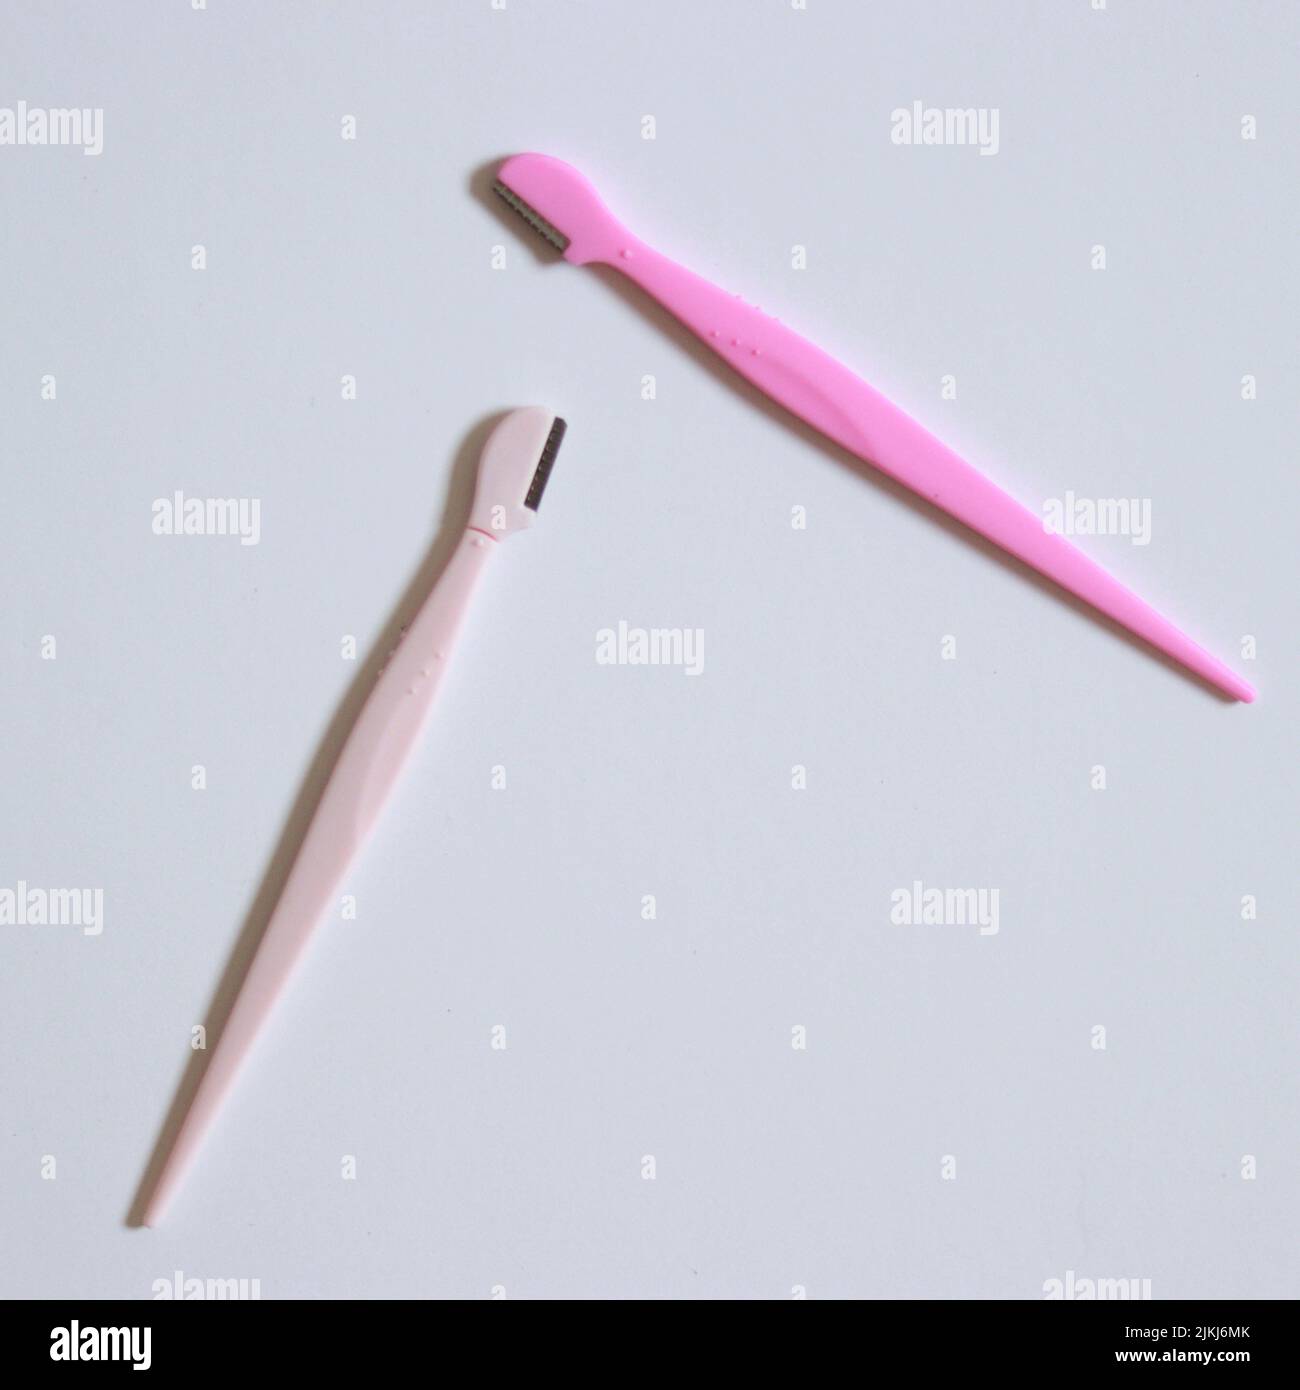 Una cara y cejas dos afeitadoras rosadas sobre una superficie blanca Foto de stock